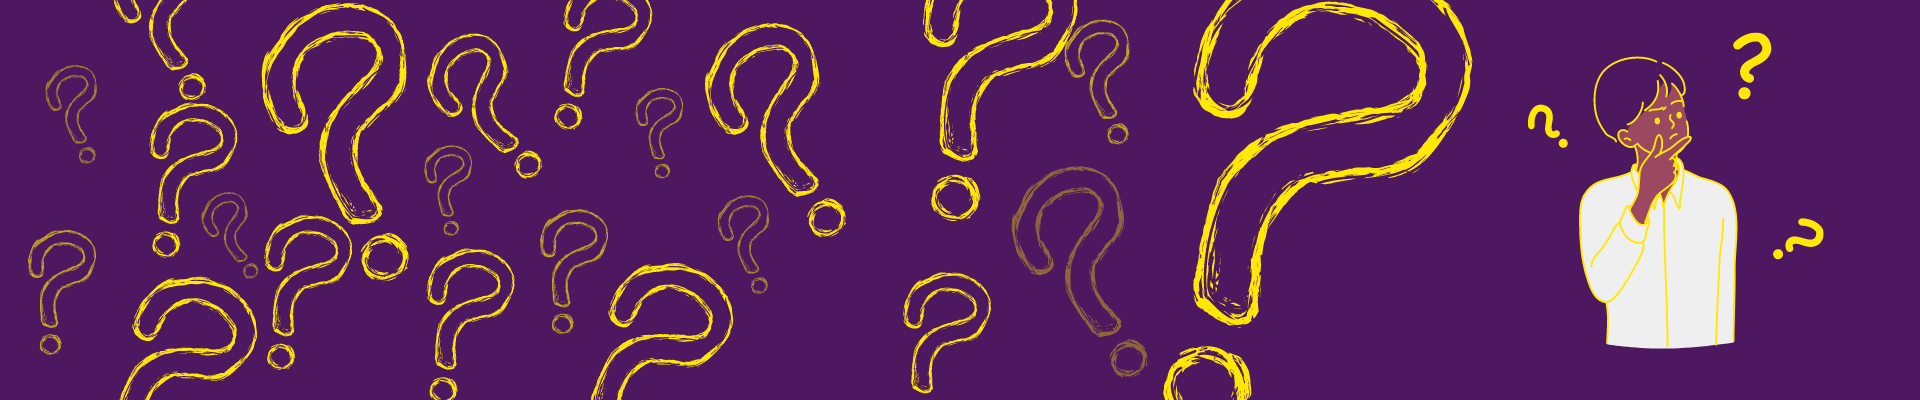 Fond violet avec des points d'interrogation jaunes flottant avec le dessin d'un garçon pensif sur la gauche